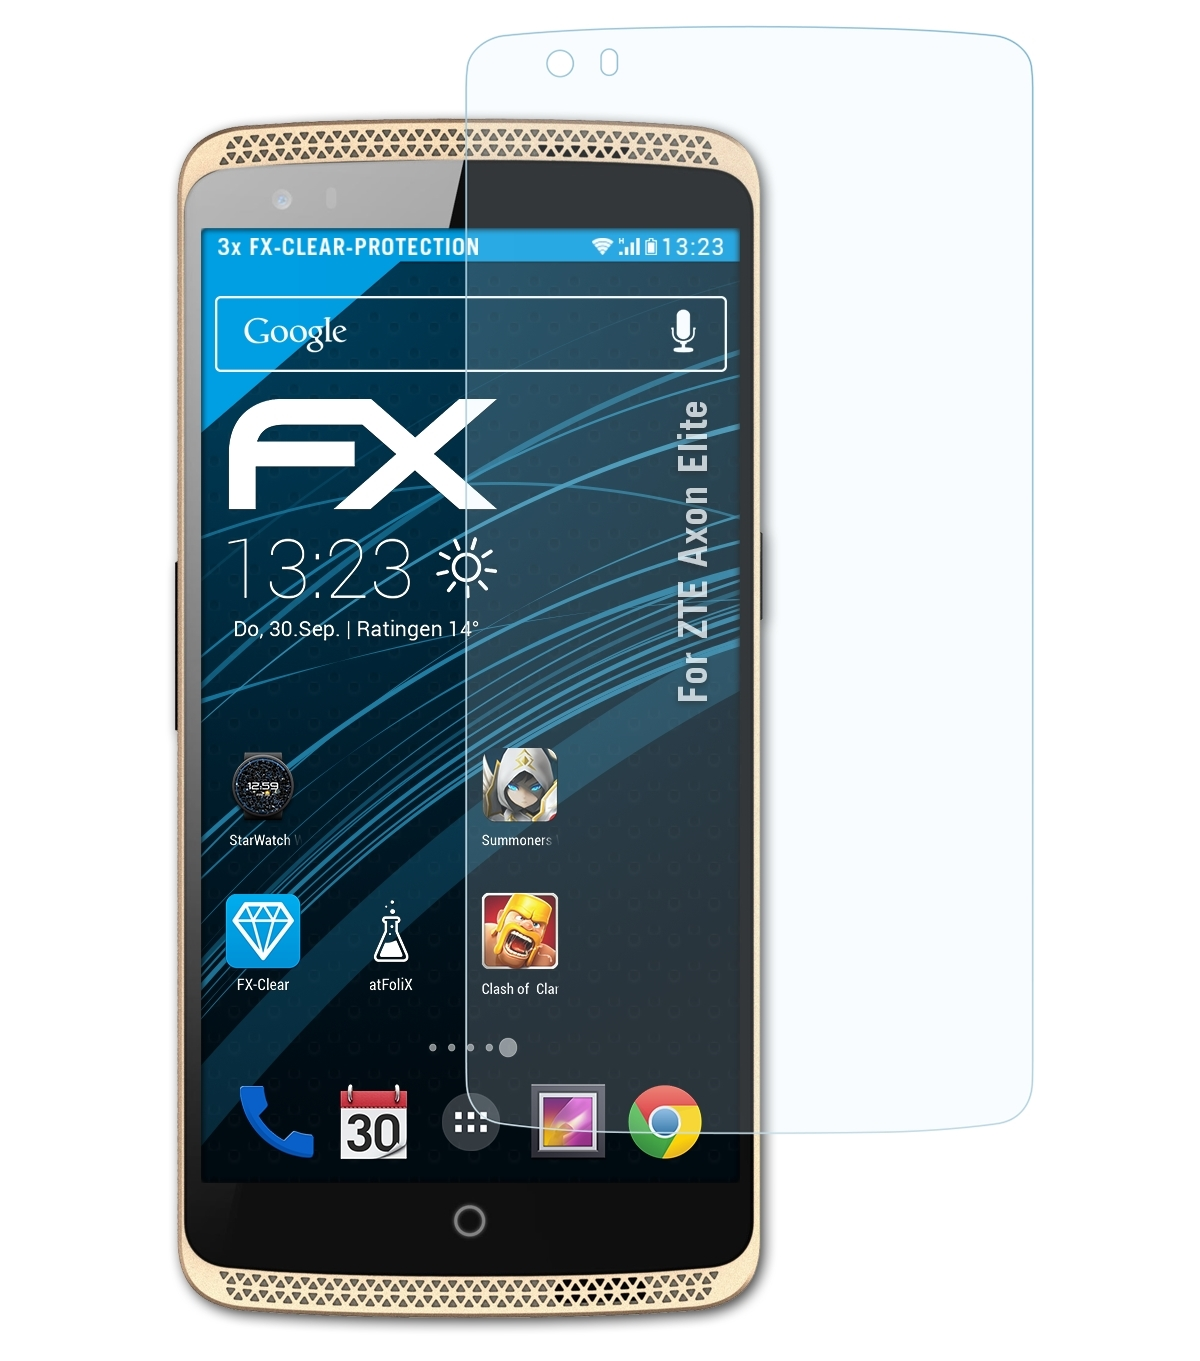 ATFOLIX 3x Elite) Axon ZTE Displayschutz(für FX-Clear